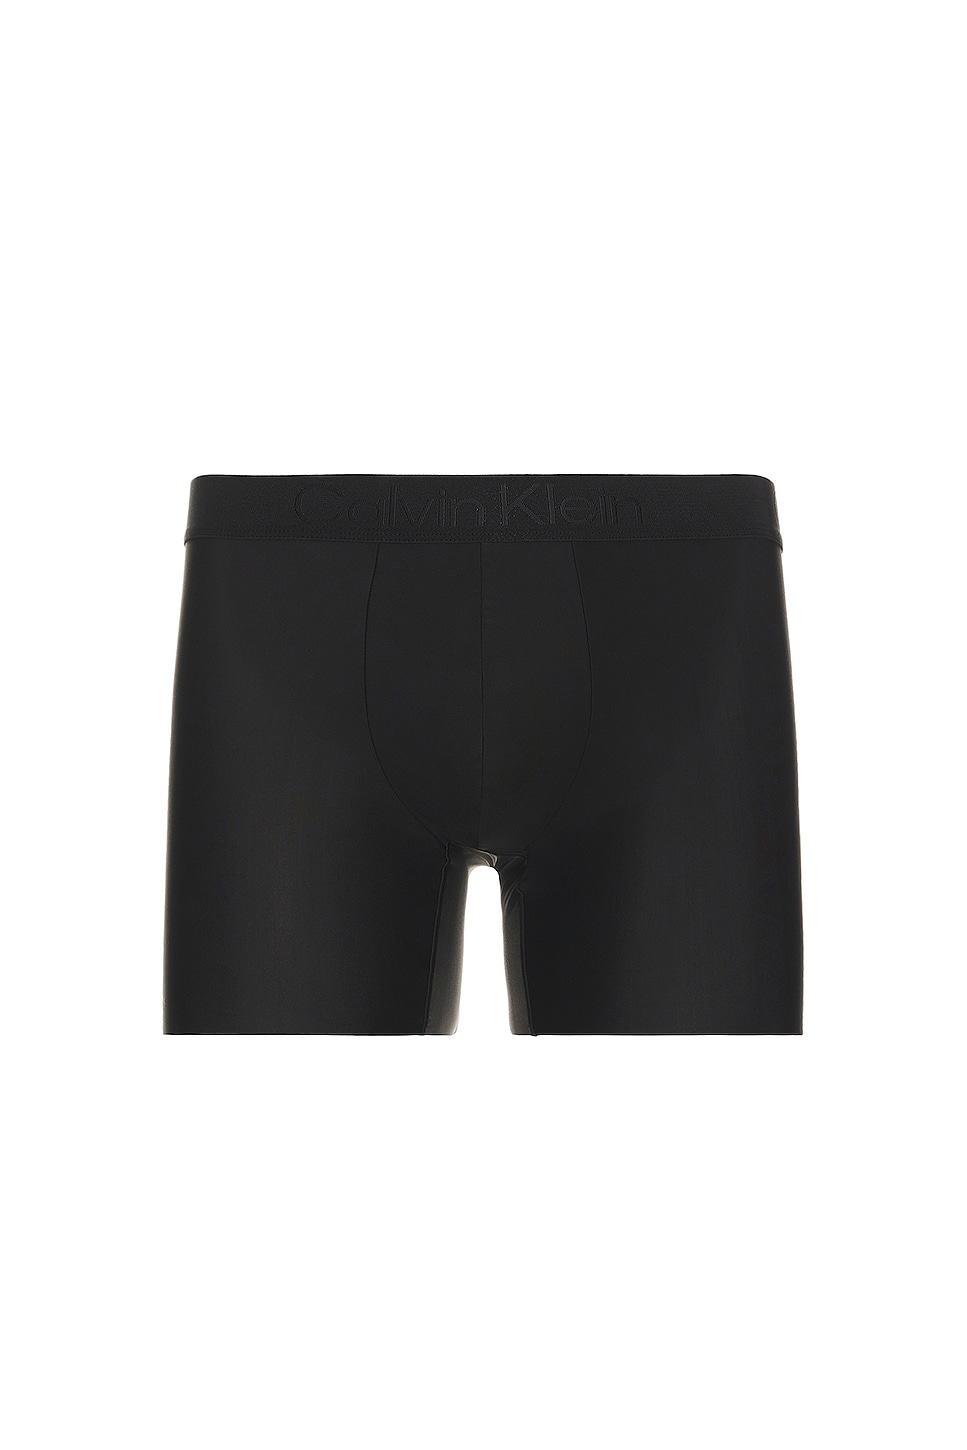 CALVIN KLEIN UNDERWEAR: CkK Underwear stretch nylon briefs - Black